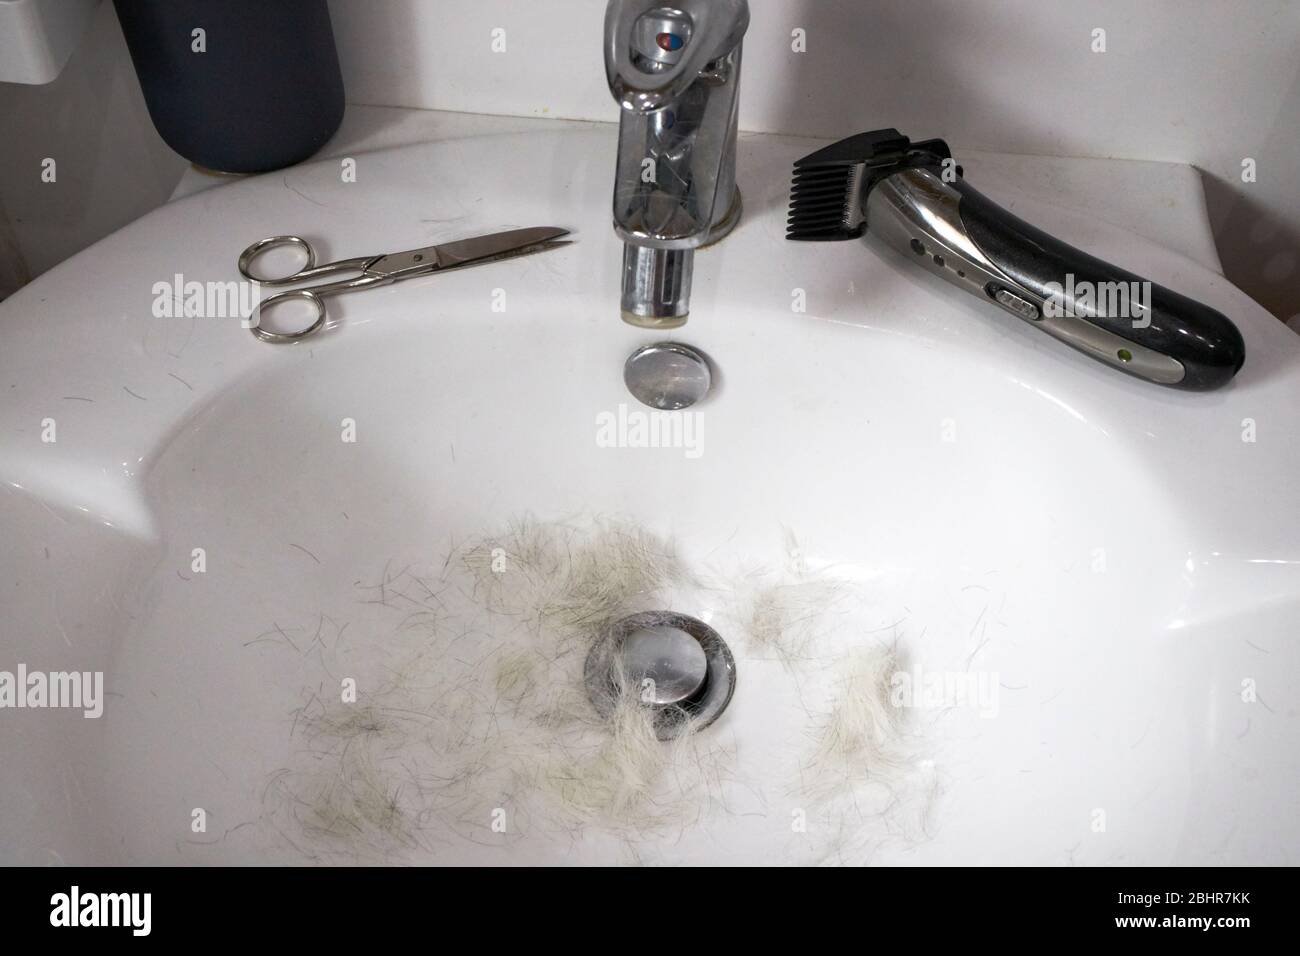 Graue Haarschere und billiger Haarschneider in einem Waschbecken aufgrund eines Mannes mittleren Alters, der seine eigenen Haare schneidet, aufgrund der Selbstisolierung Covid-19 Pandemie Stockfoto